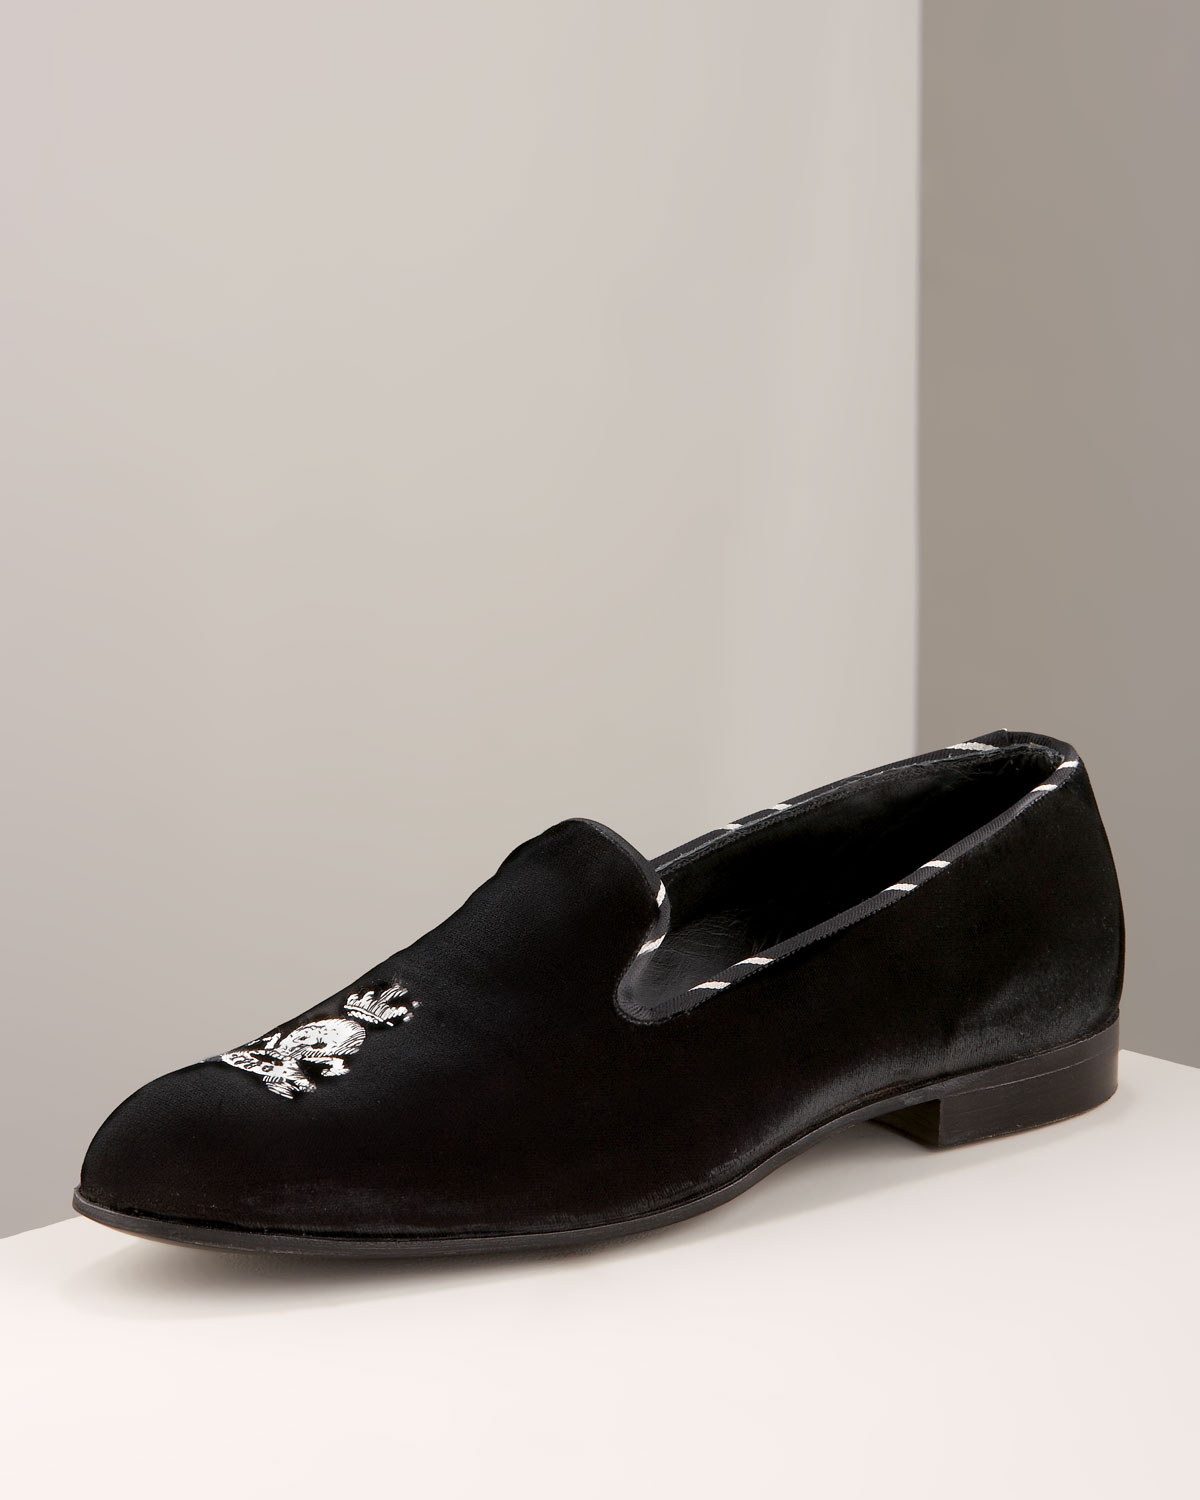 Lyst - Barker Black Velvet Loafer in Black for Men